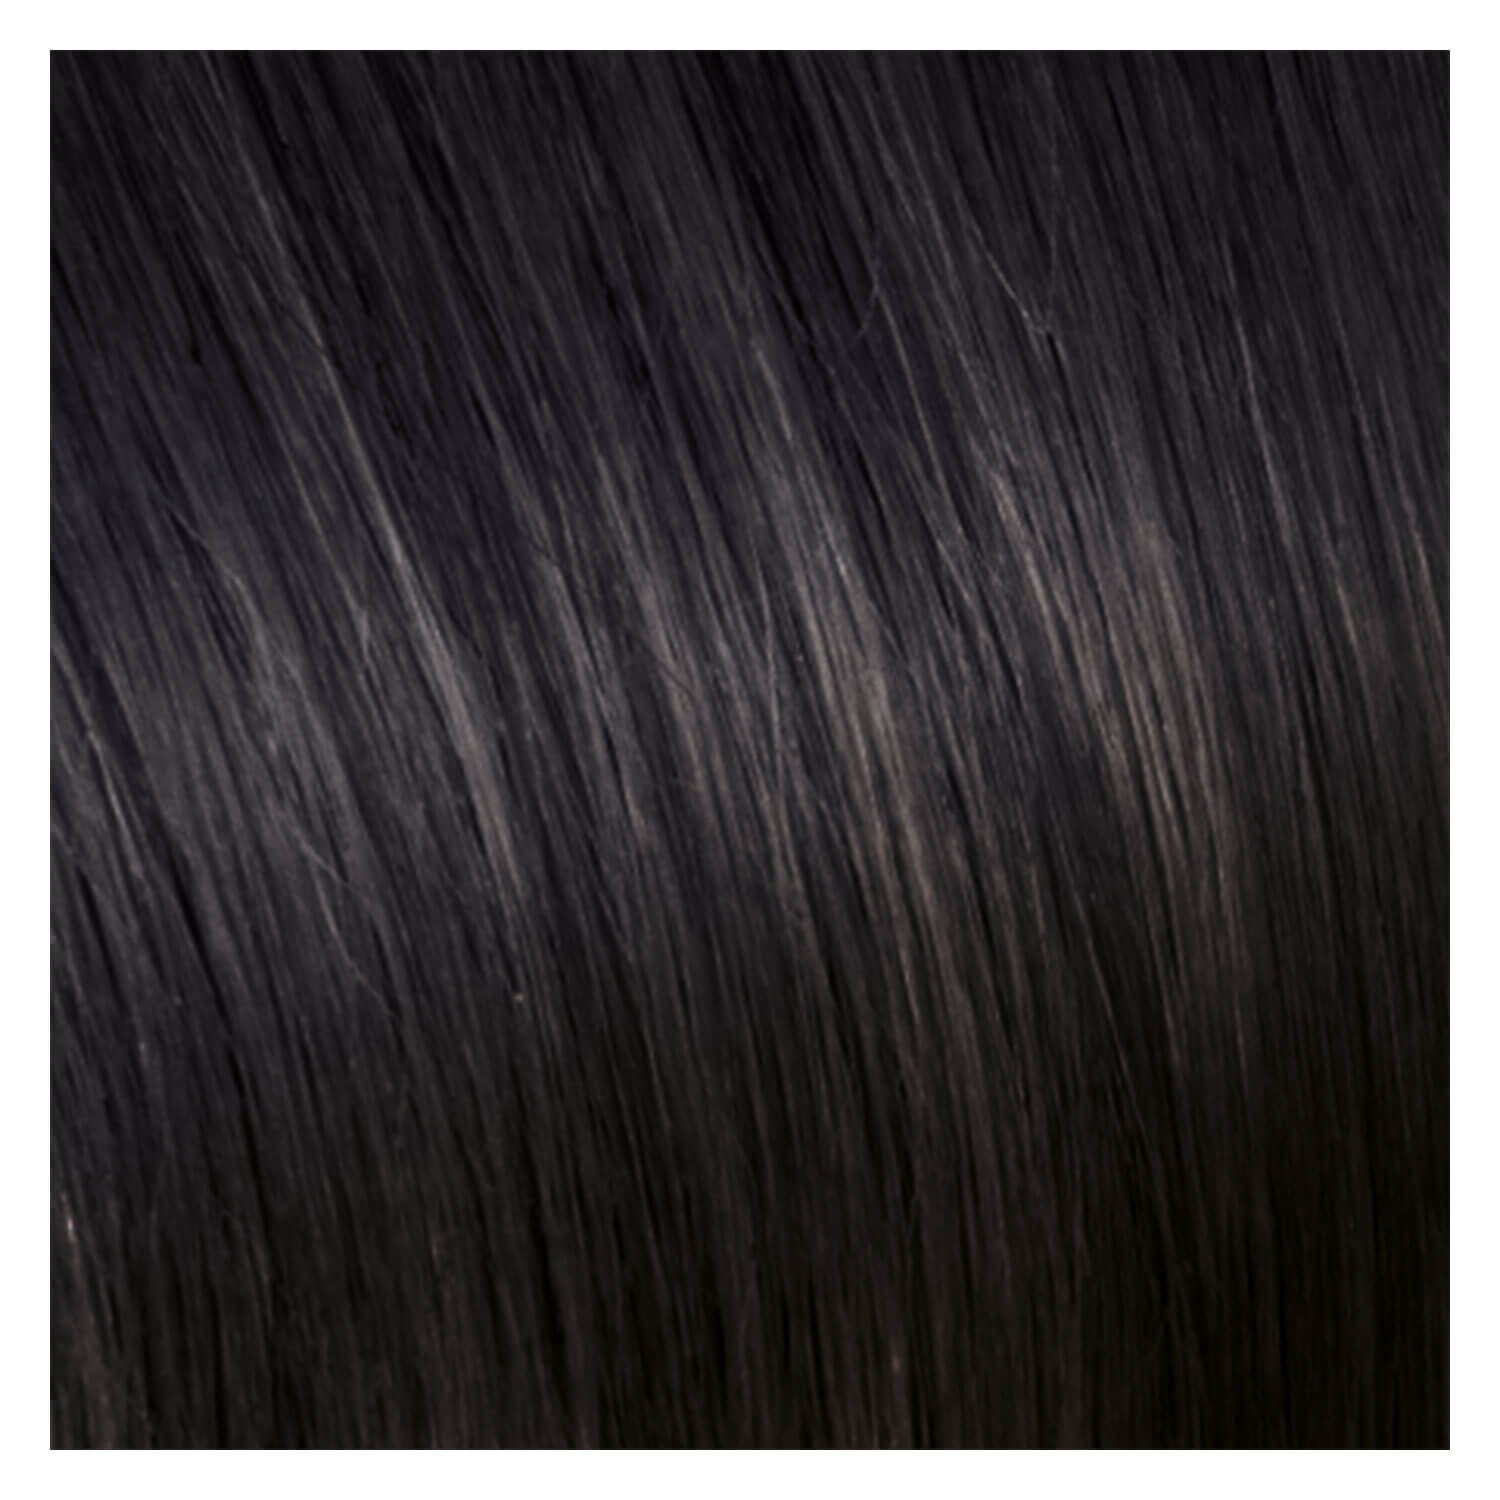 Produktbild von SHE Clip In-System Hair Extensions - 1B Schwarz 50/55cm